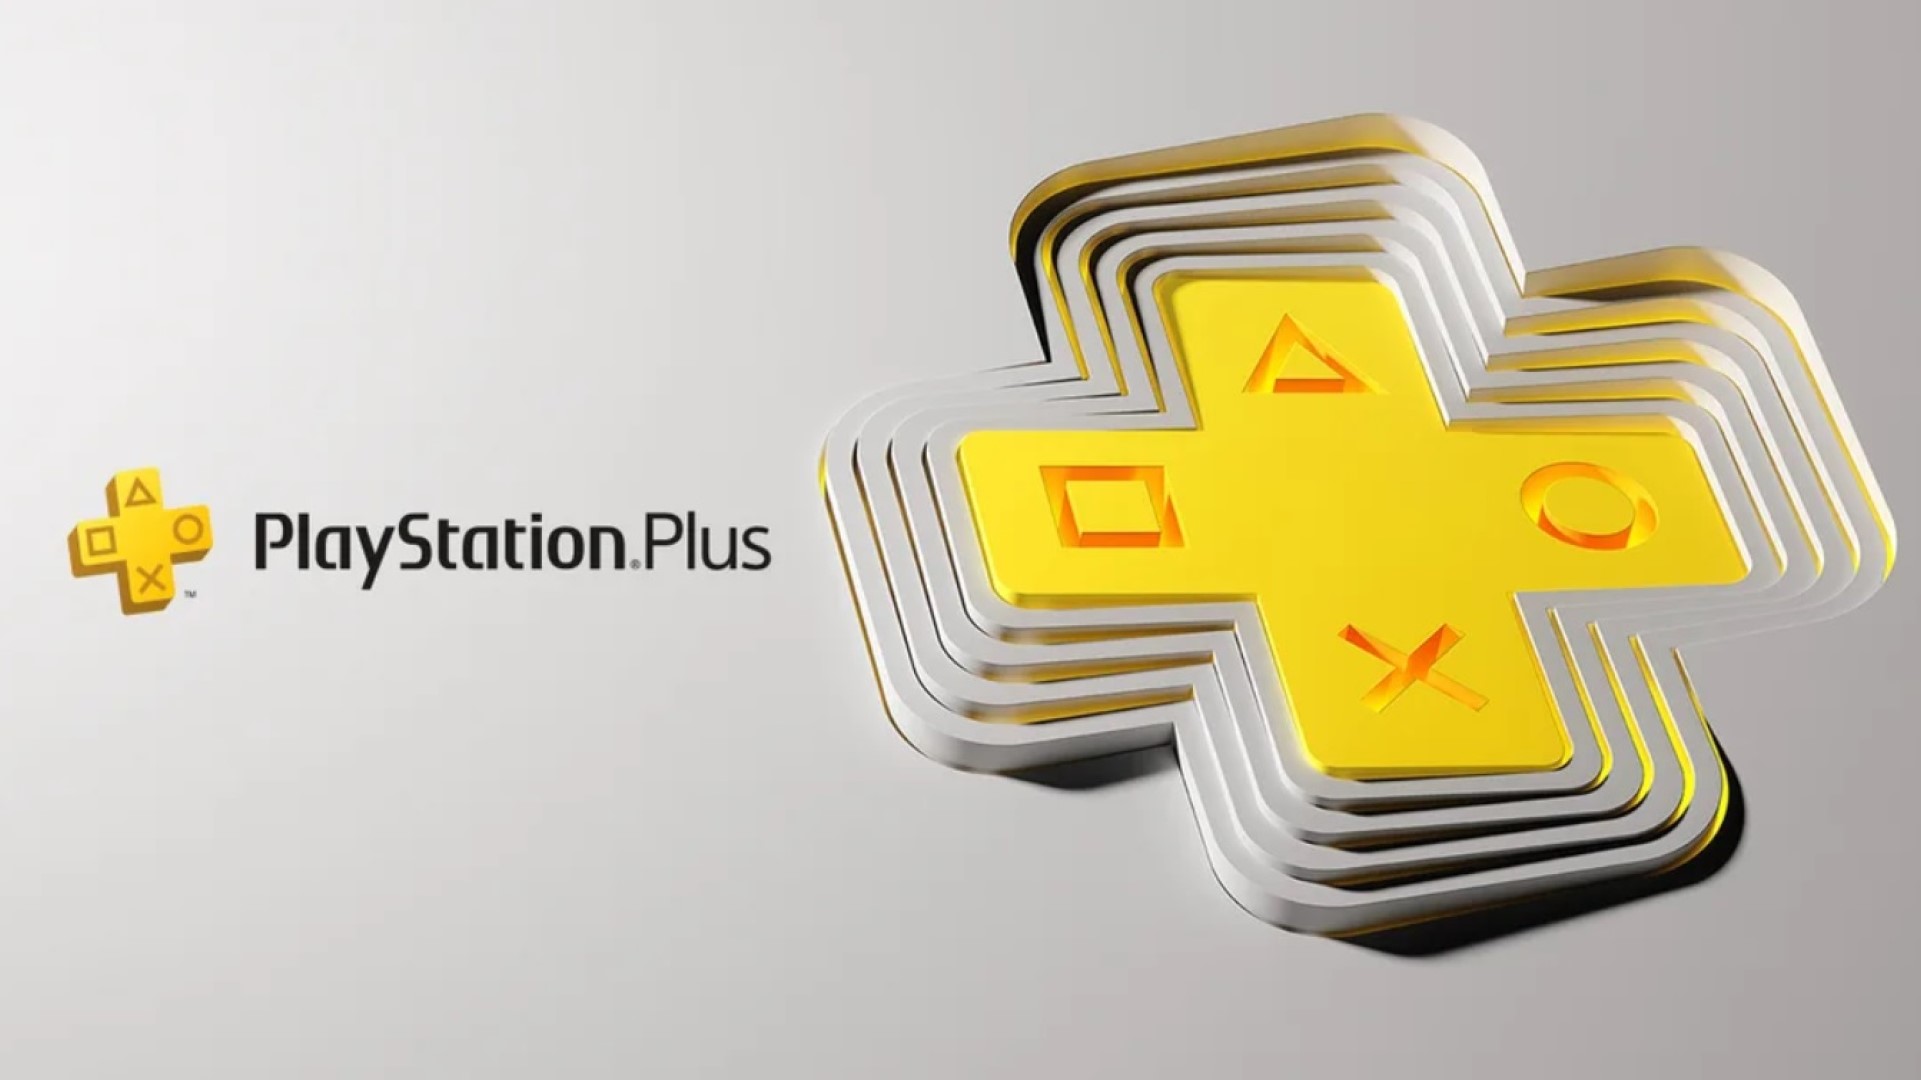 保证索尼PS用户将能够轻松升级到新版本的服务。